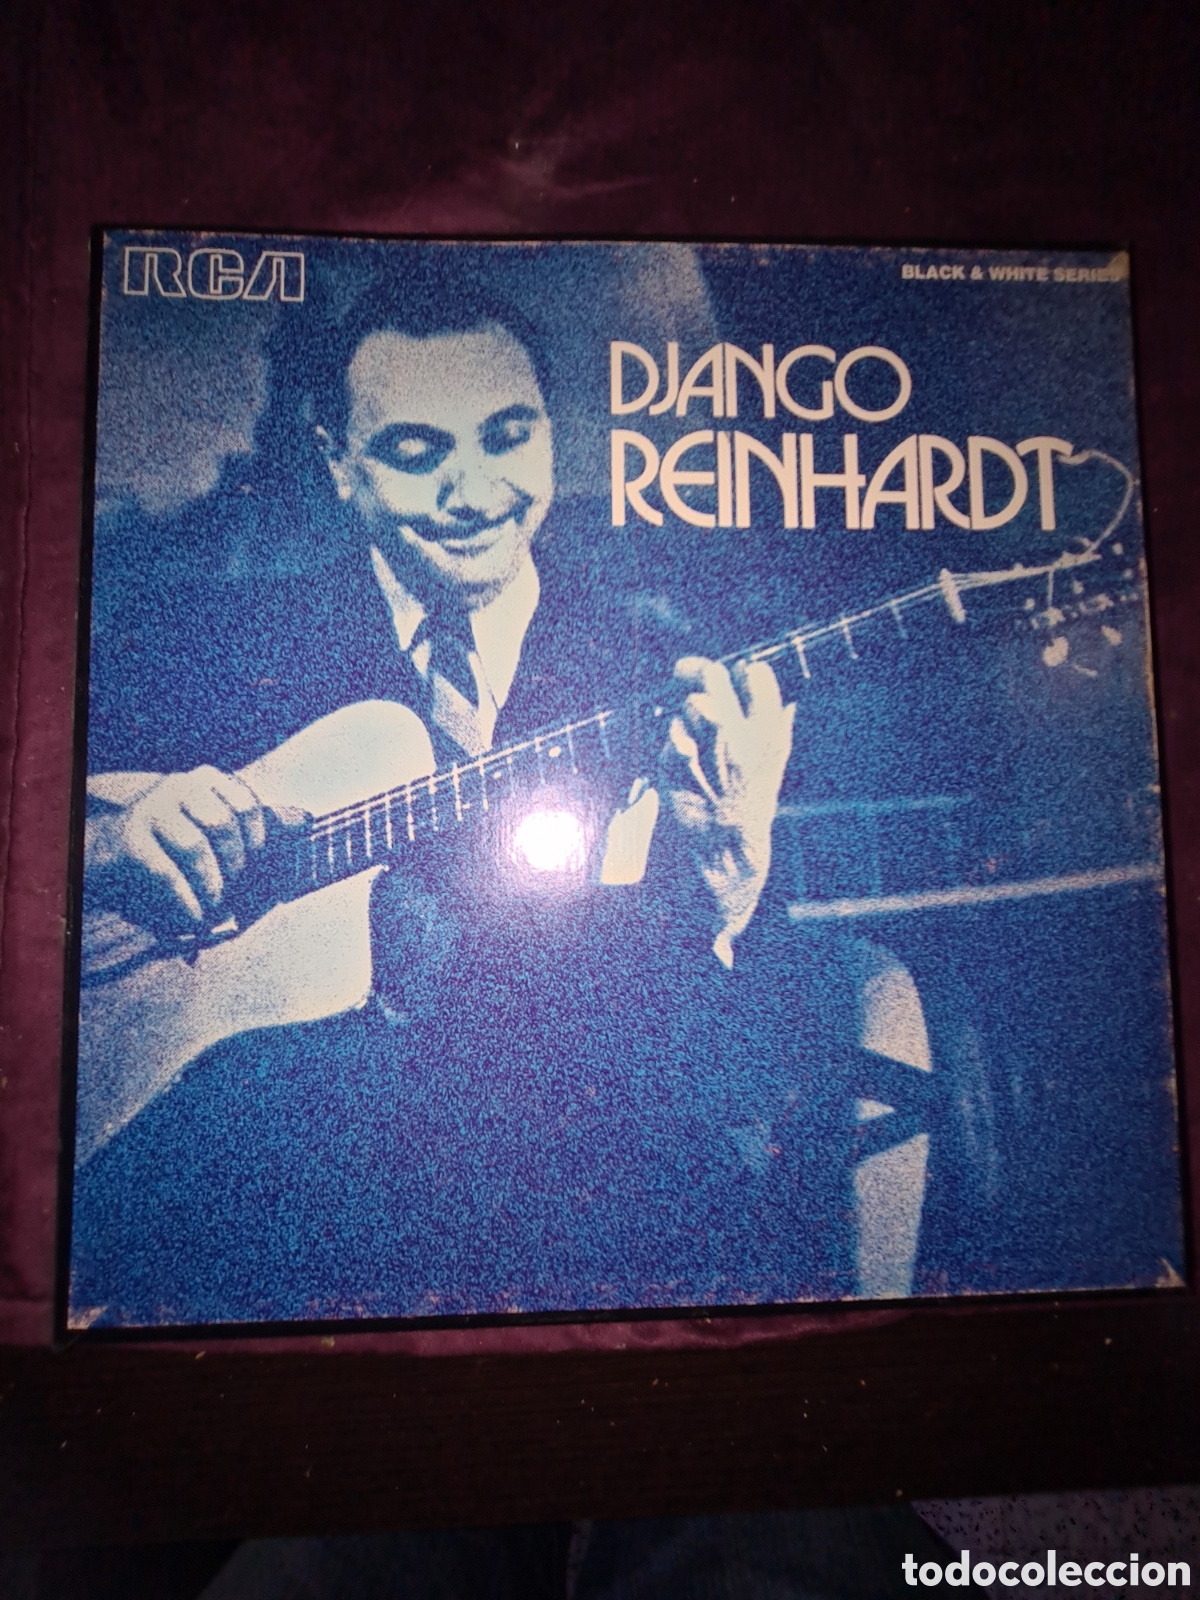 django reinhardt et le quintette du hot club de - Buy LP vinyl records of  Jazz, Jazz-Rock, Blues and R&B on todocoleccion